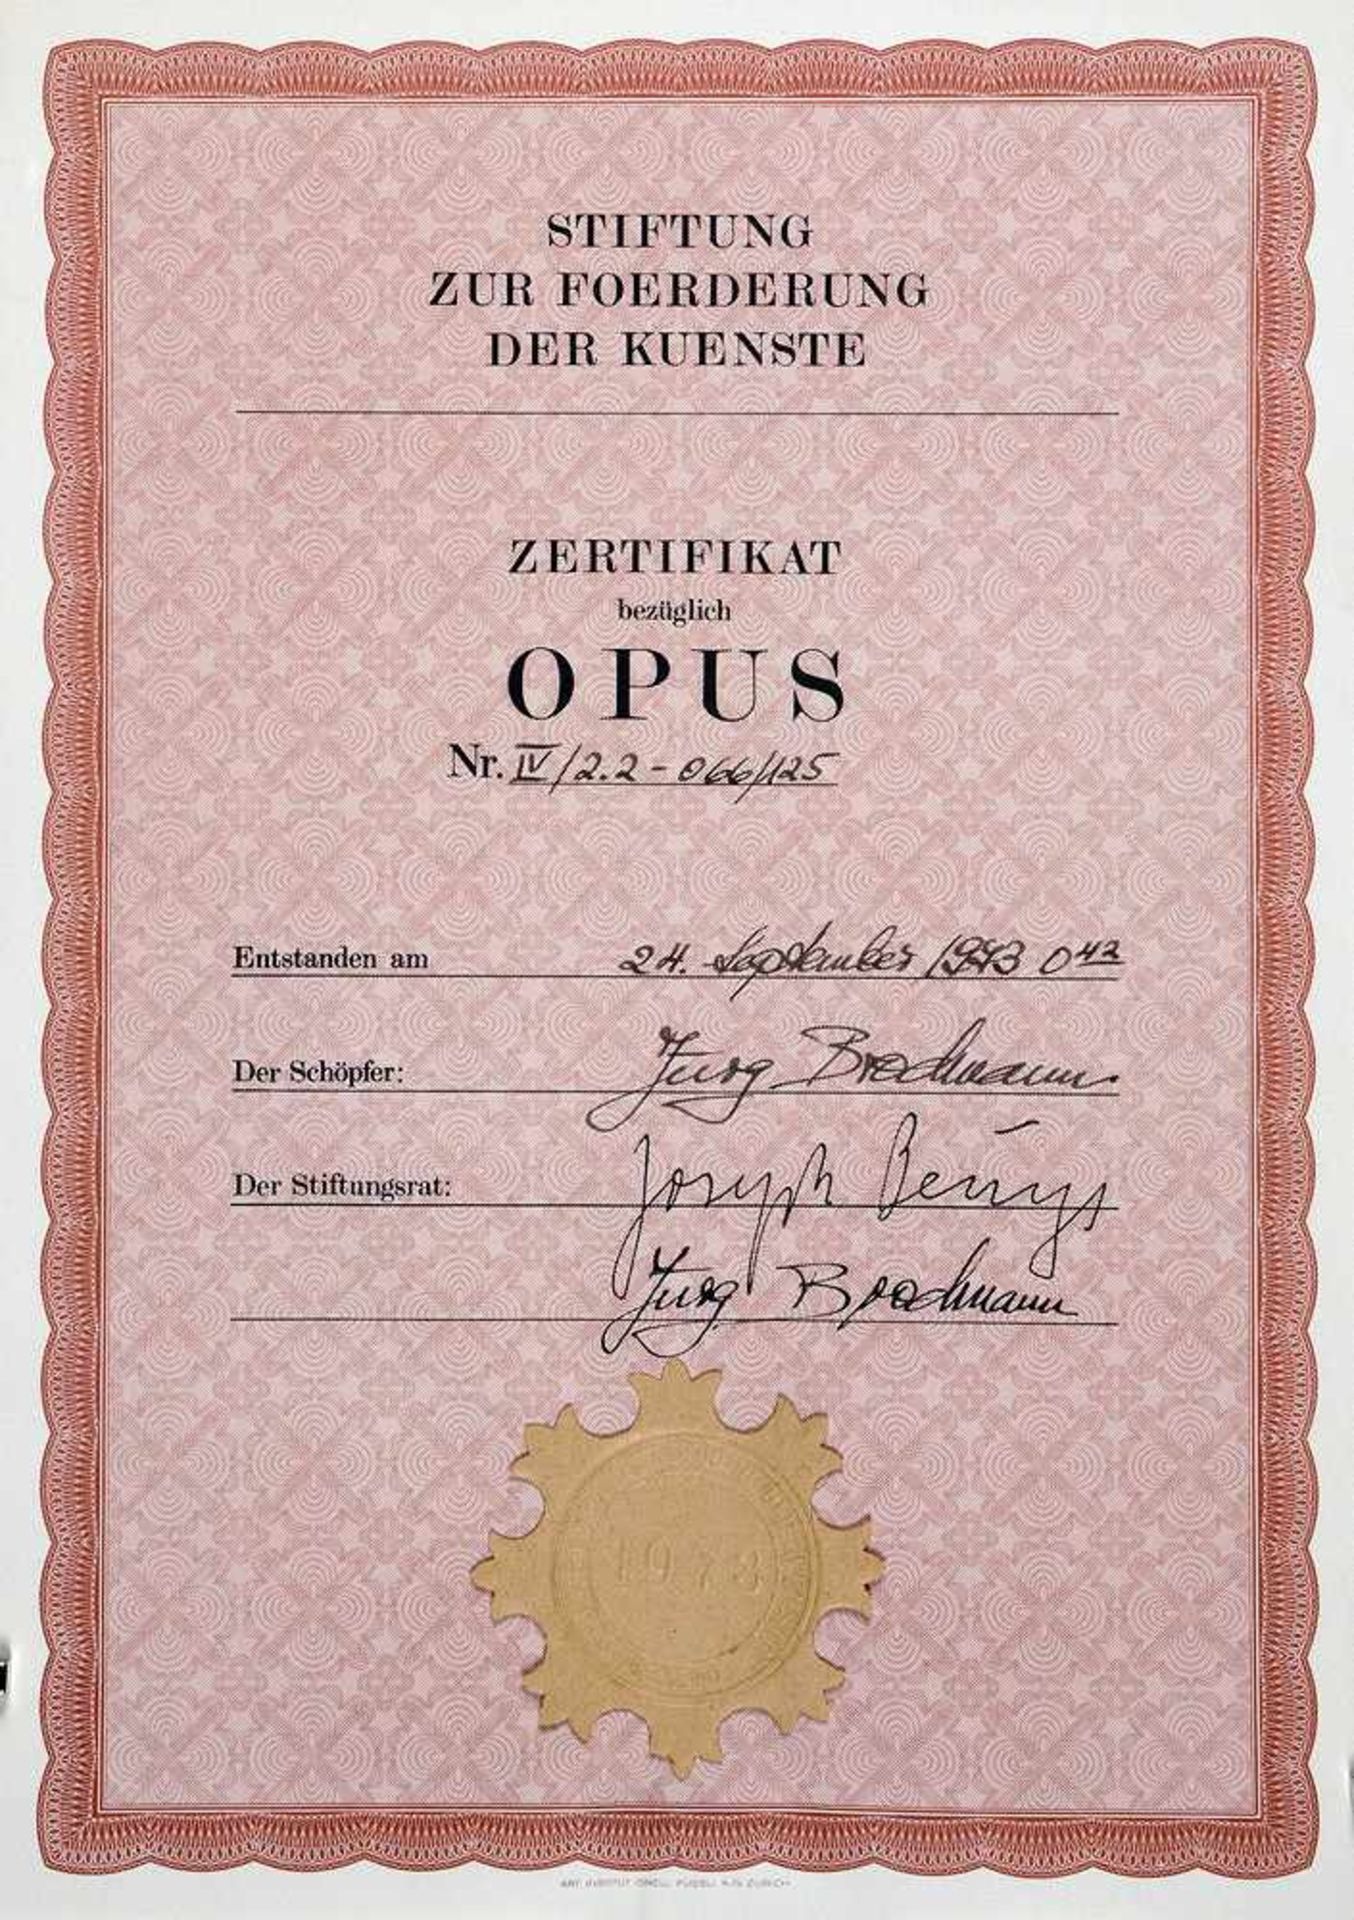 Joseph Beuys. Fettbriefe. Multiple (Papier, Druckfarbe, Fett). 1973. 29,6 : 21,0 cm. Signiert.